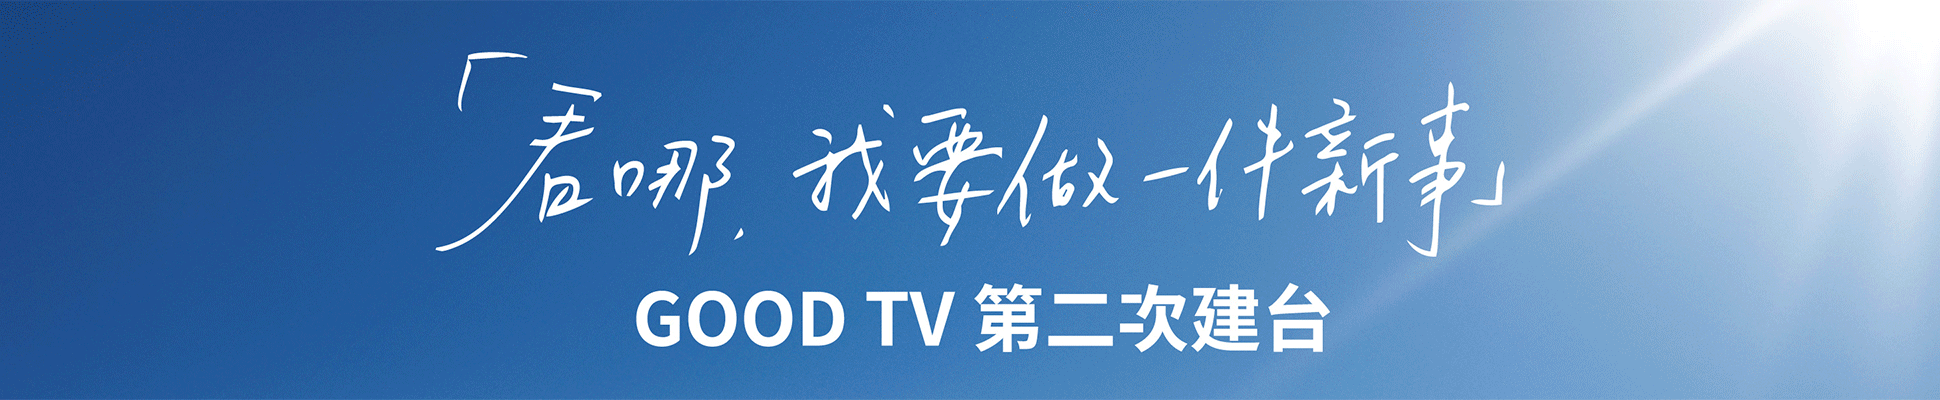 #71214 財團法人加百列福音傳播基金會GOODTV+(5/3-9)文章頭